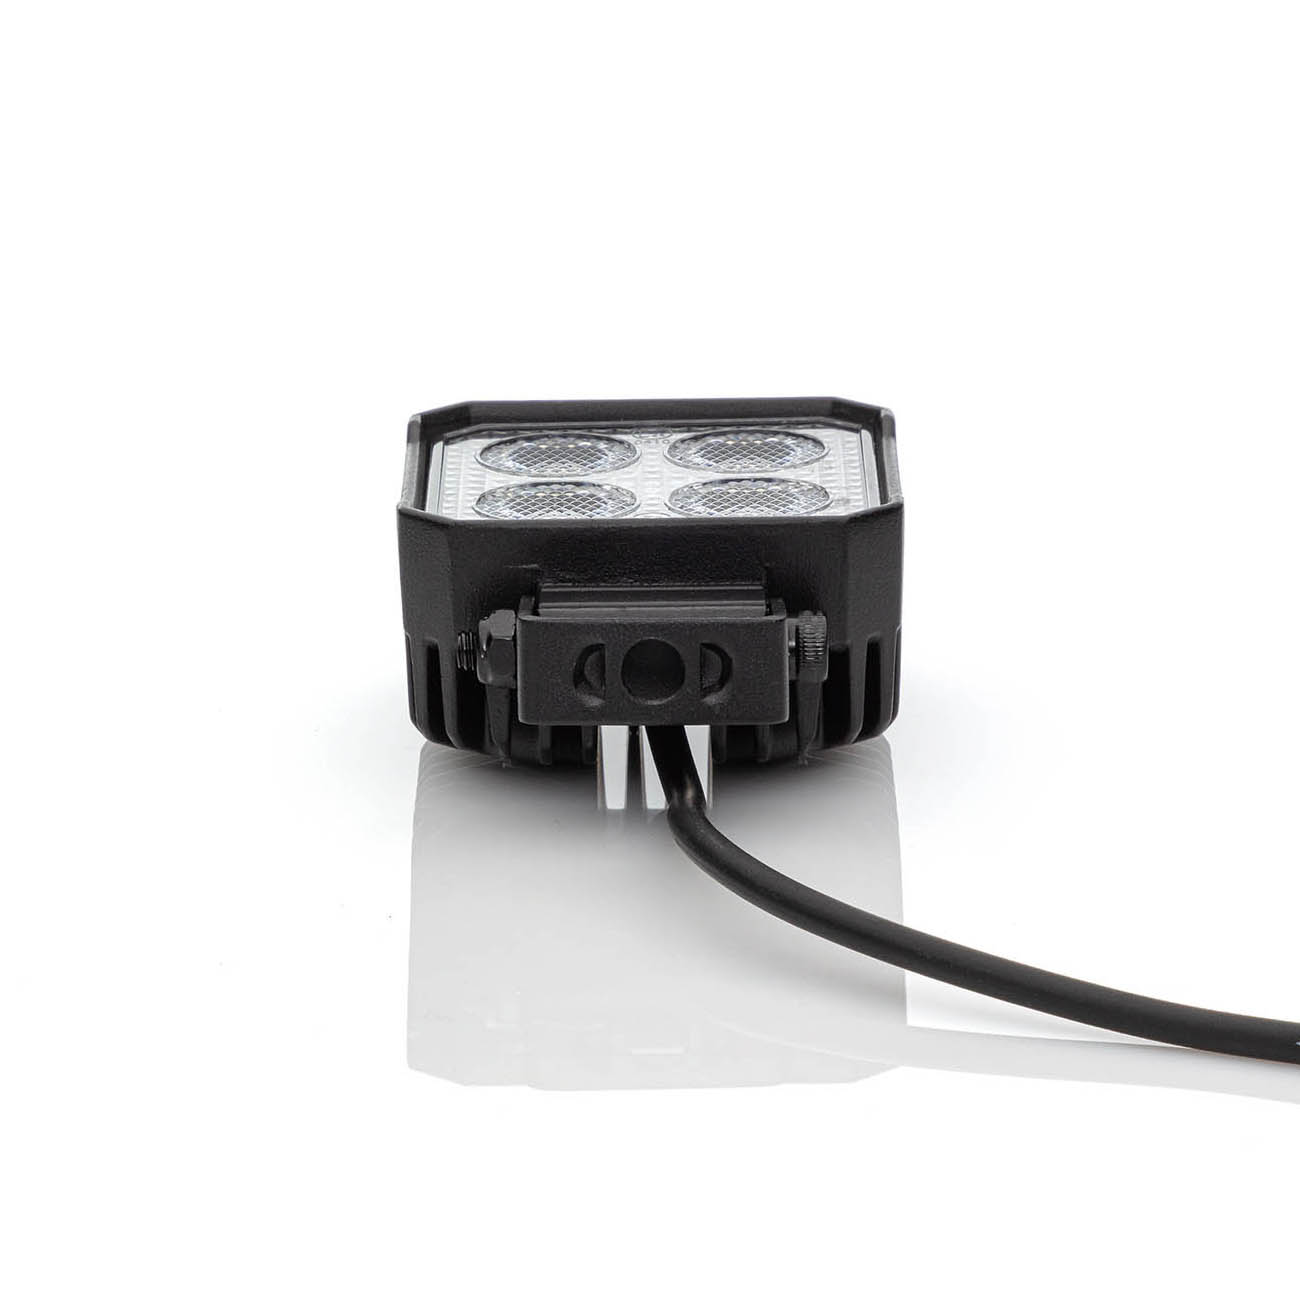 GROTE LED-Rückfahrscheinwerfer e-QUAD 24 V - 0163U712, 174,99 €